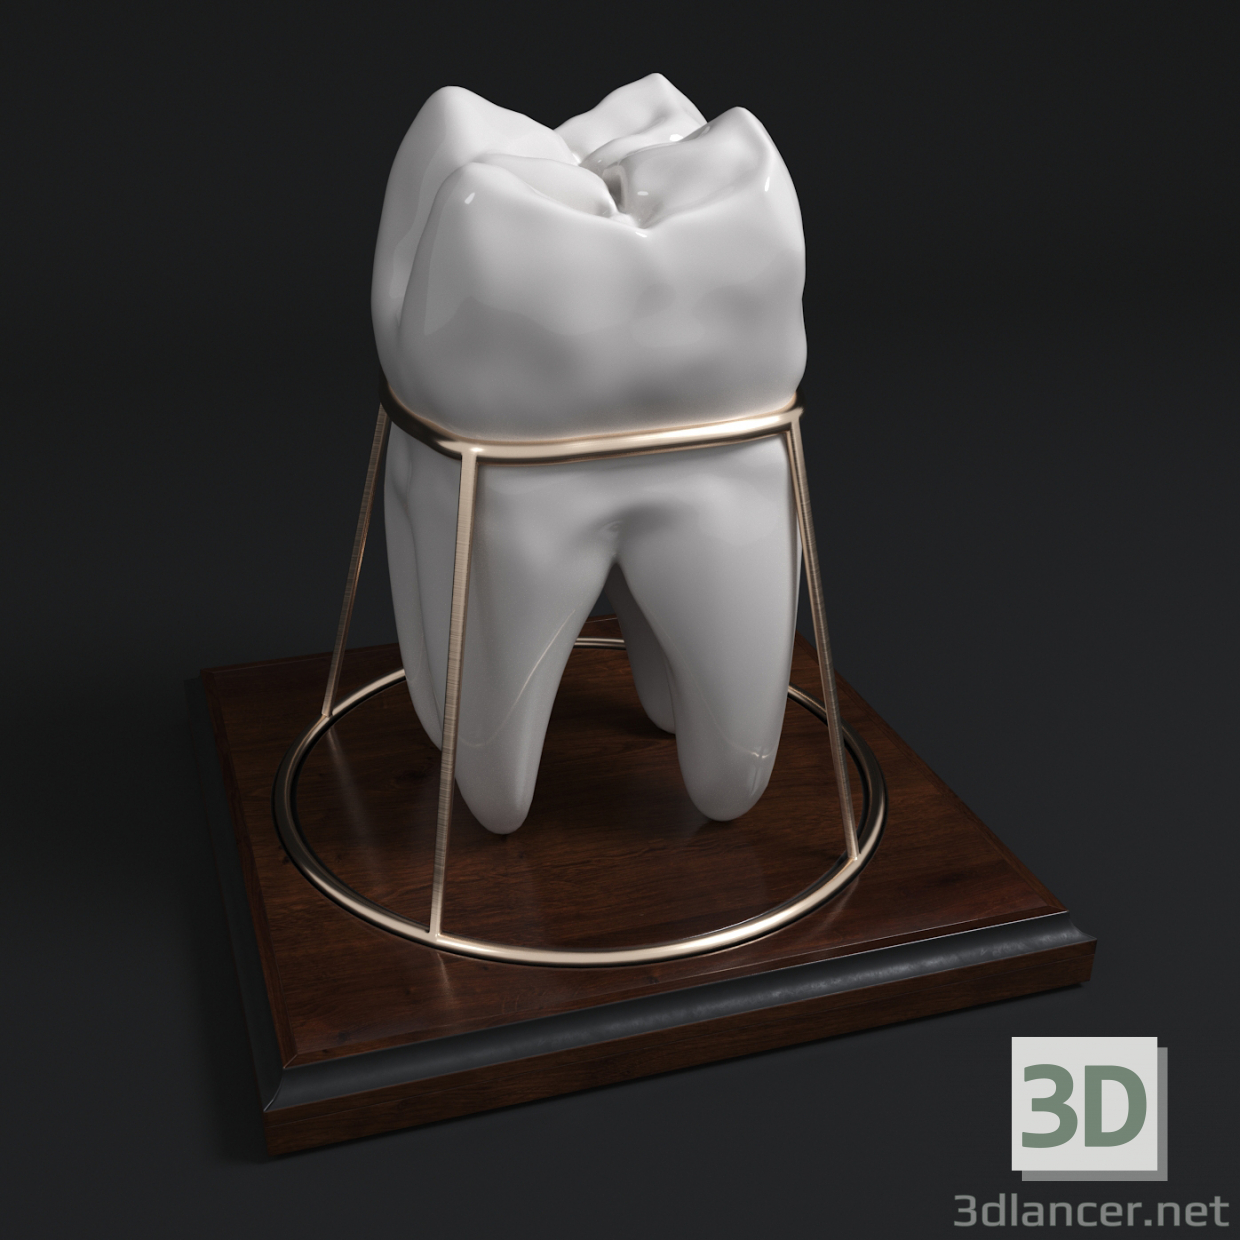 Tooth_Souvenir 3D-Modell kaufen - Rendern